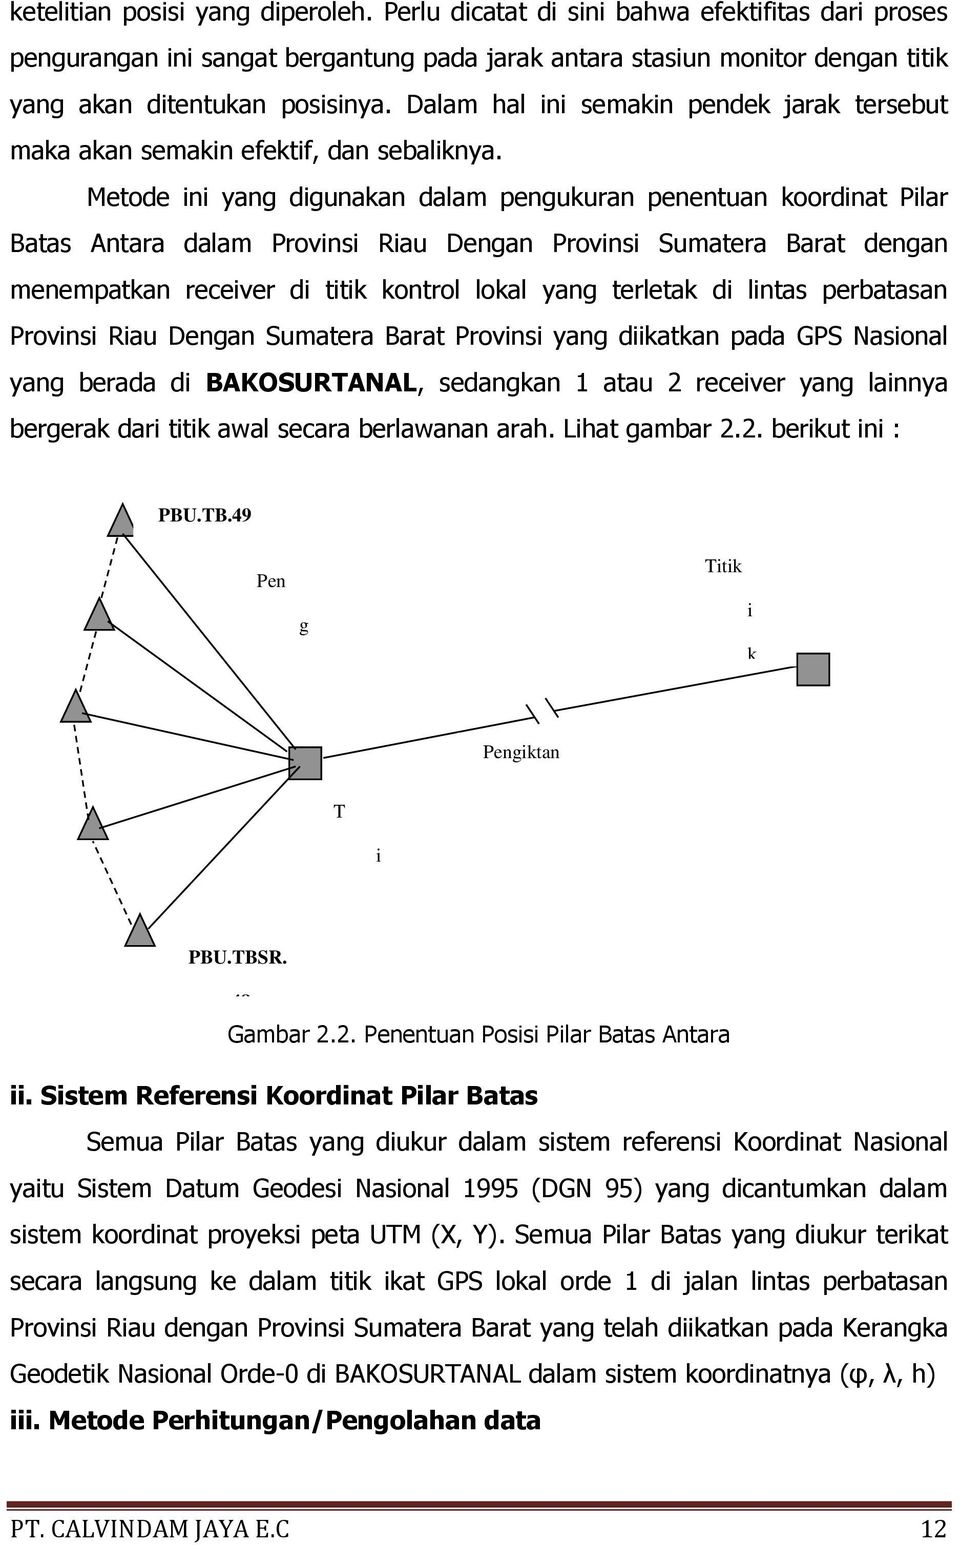 Metode ini yang digunakan dalam pengukuran penentuan koordinat Pilar Batas Antara dalam Provinsi Riau Dengan Provinsi Sumatera Barat dengan menempatkan receiver di titik kontrol lokal yang terletak